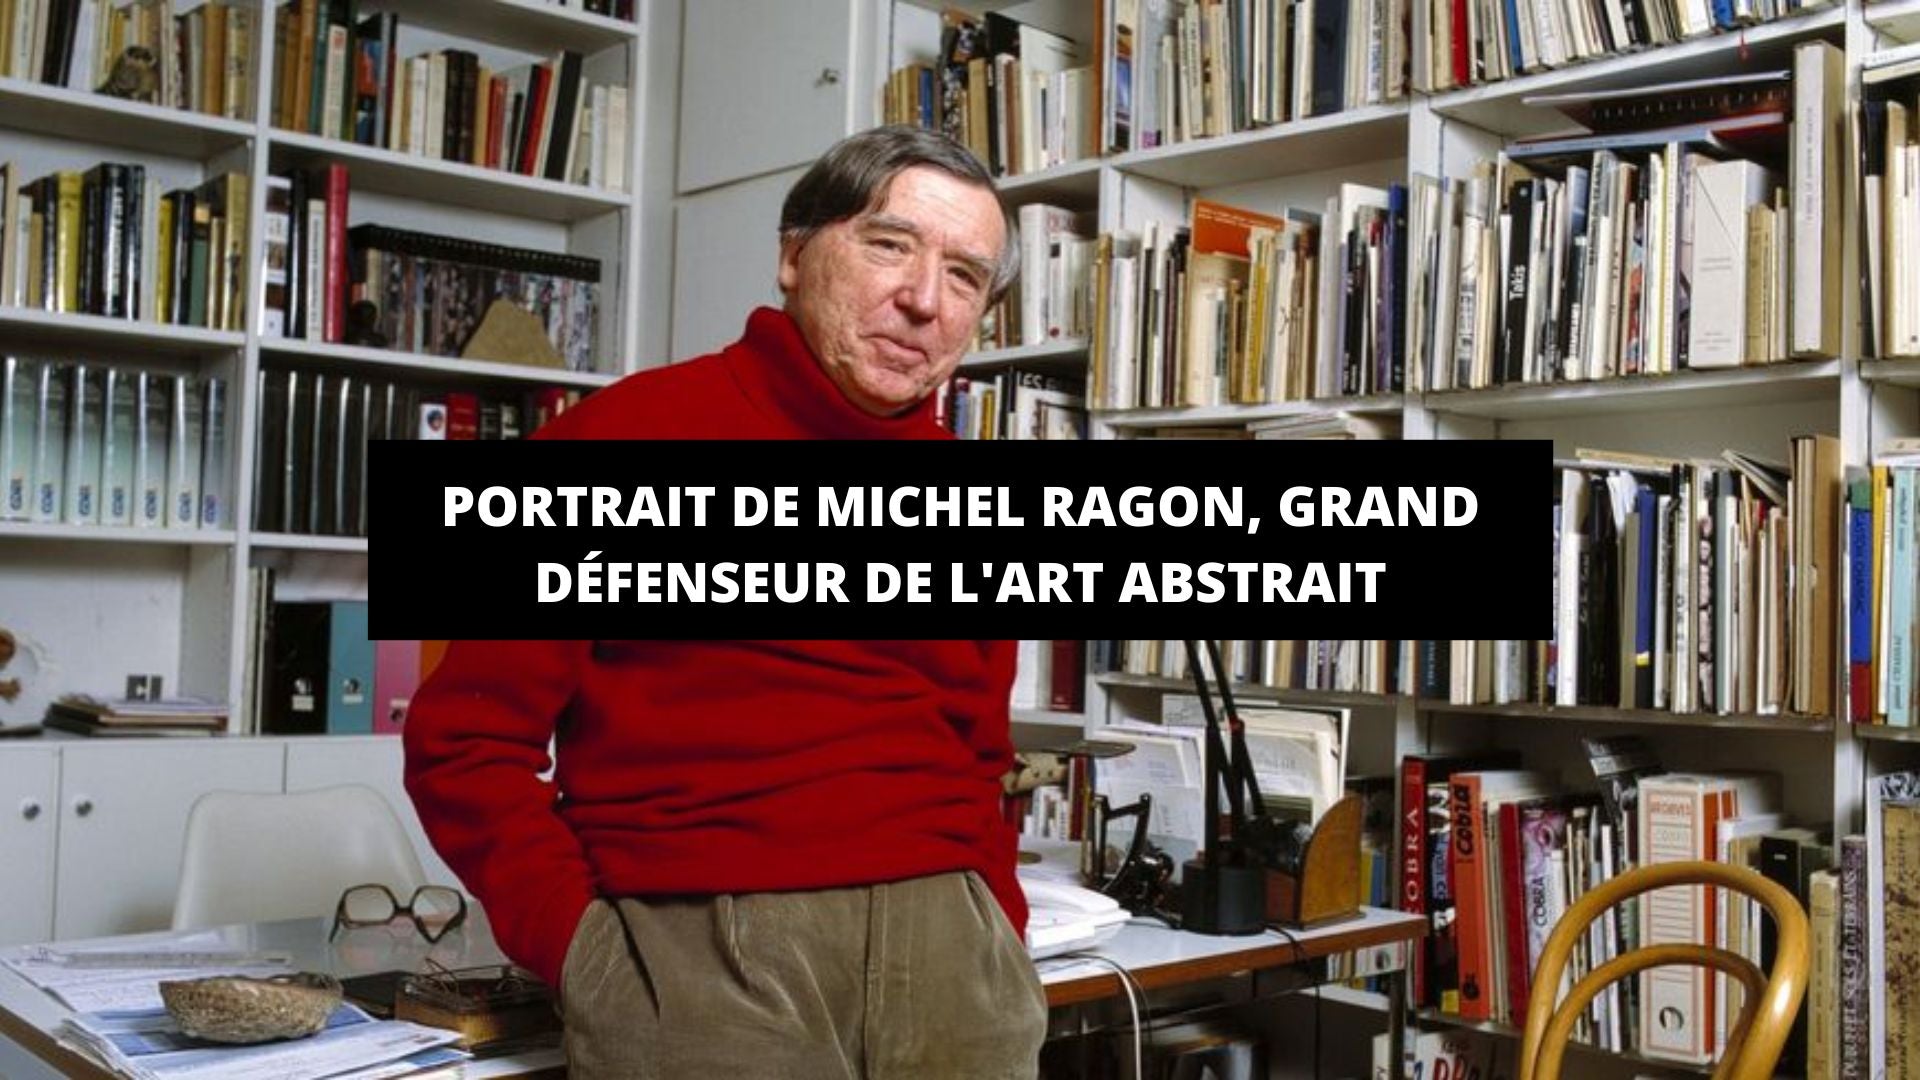 Portrait de Michel Ragon, grand défenseur de l'art abstrait - The Art Avenue